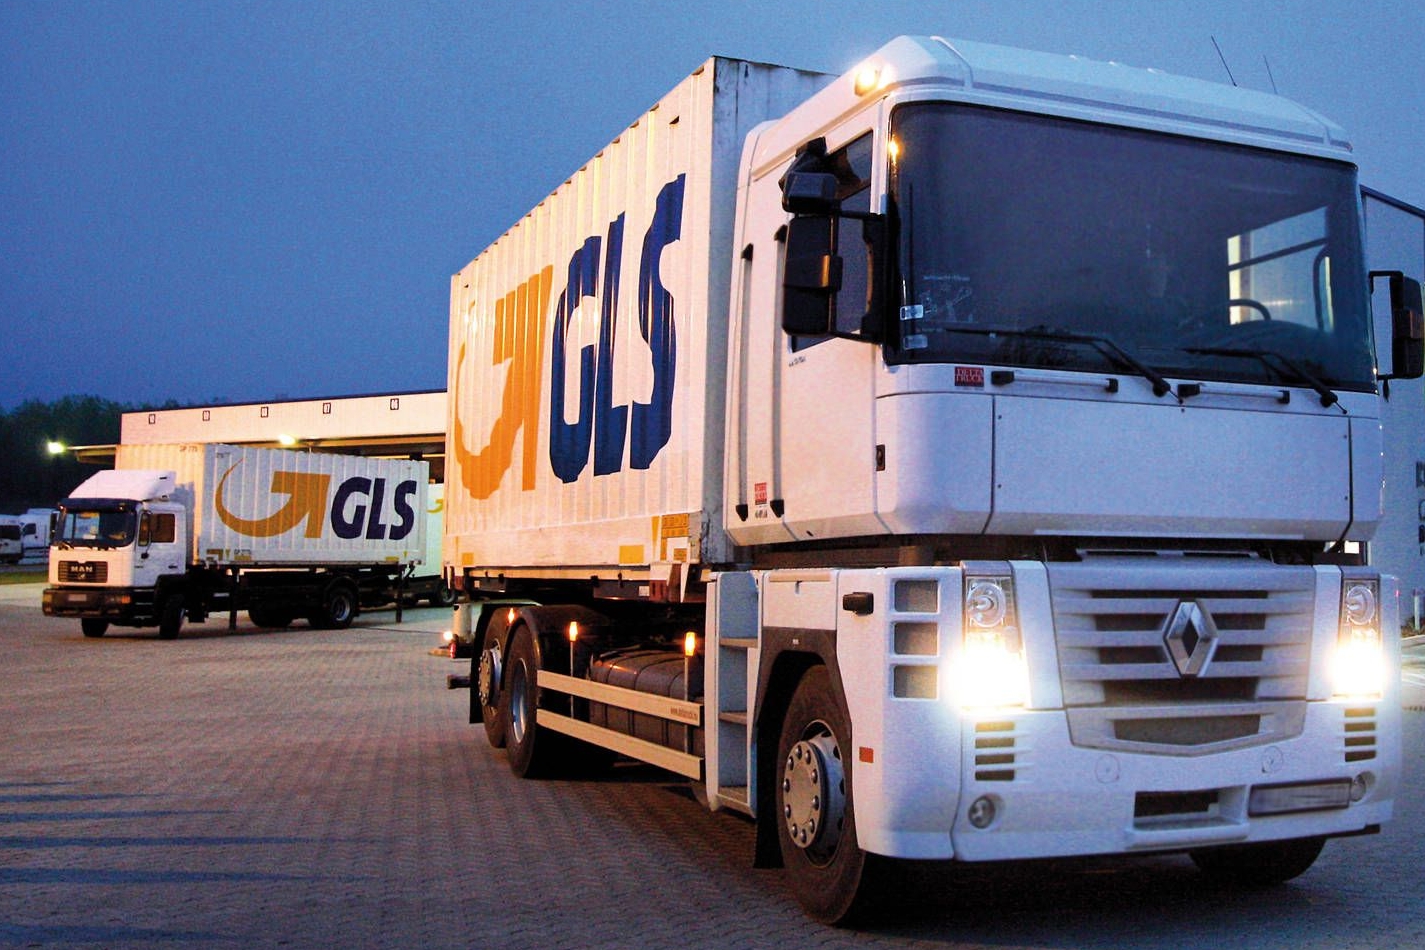 GLS gestiona alrededor de 436 millones de paquetes al año.